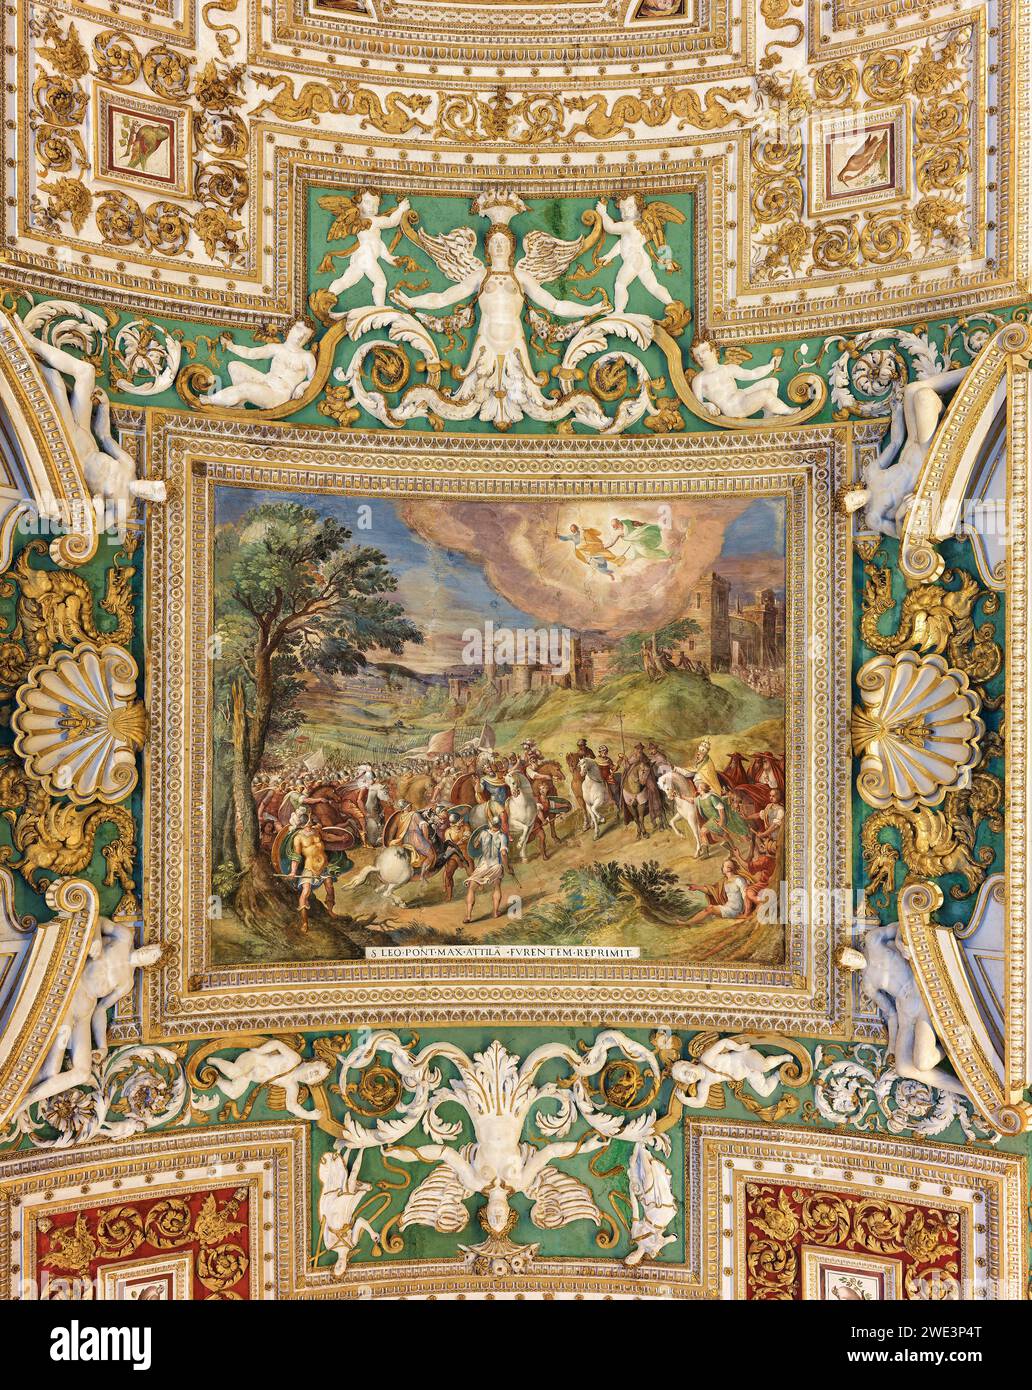 Pittura (Papa San Leone affronta Attila l'Unno) e decorazioni sul soffitto nella galleria delle mappe geografiche, Musei Vaticani, Roma, Italia. Foto Stock